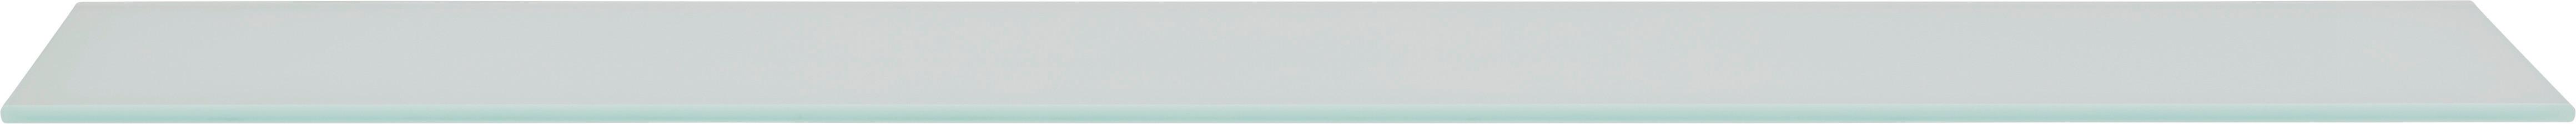 Staklena Polica Galileo - bijela, staklo (78/0,6/18cm) - Modern Living